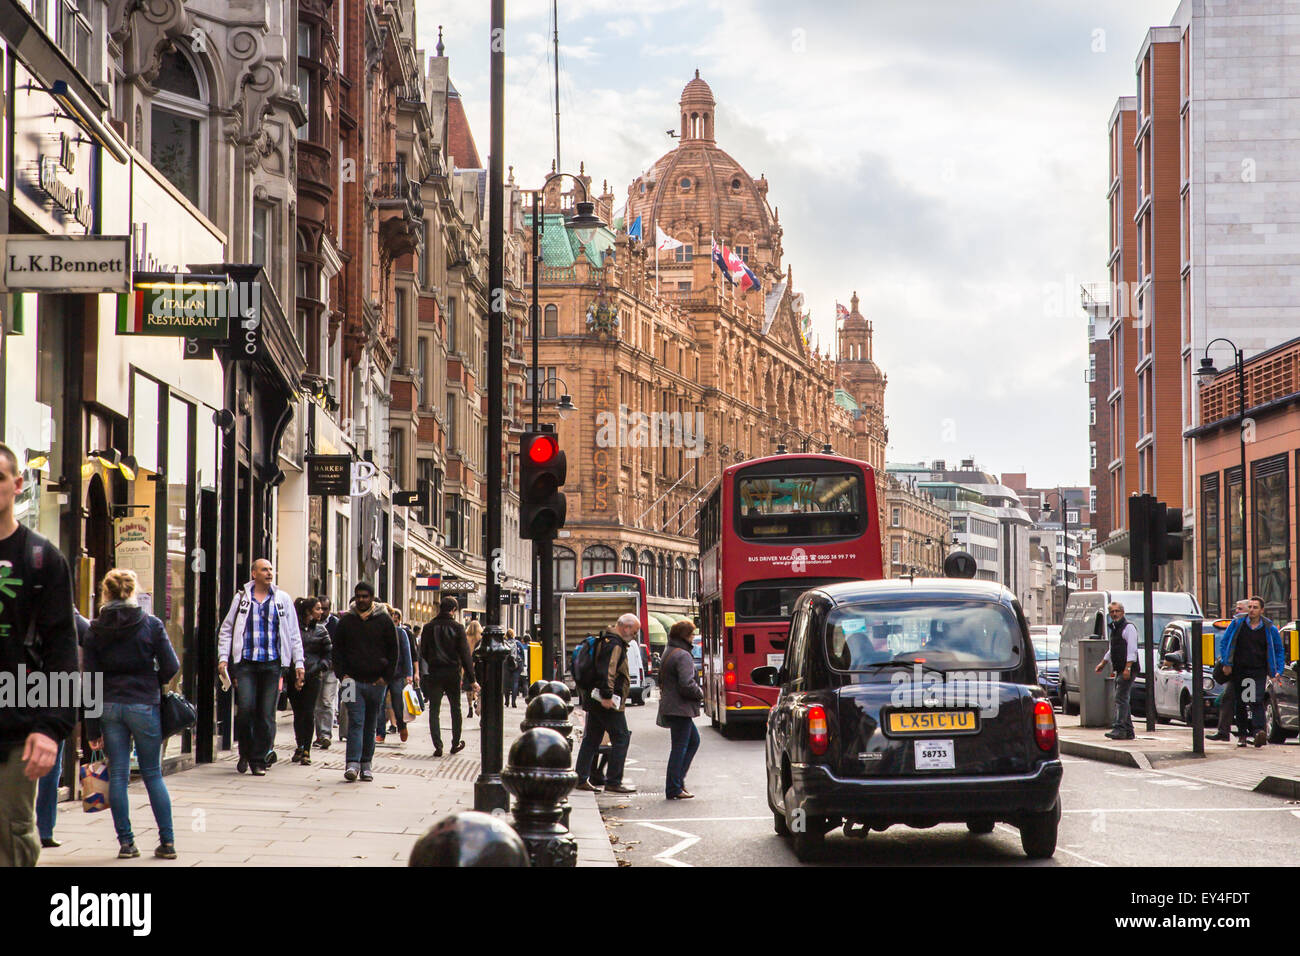 Londres, Royaume-Uni, le 8 octobre 2014 : vue sur la rue de Londres le long occupé Brompton Road à Londres avec Harrods et iconique doub Banque D'Images